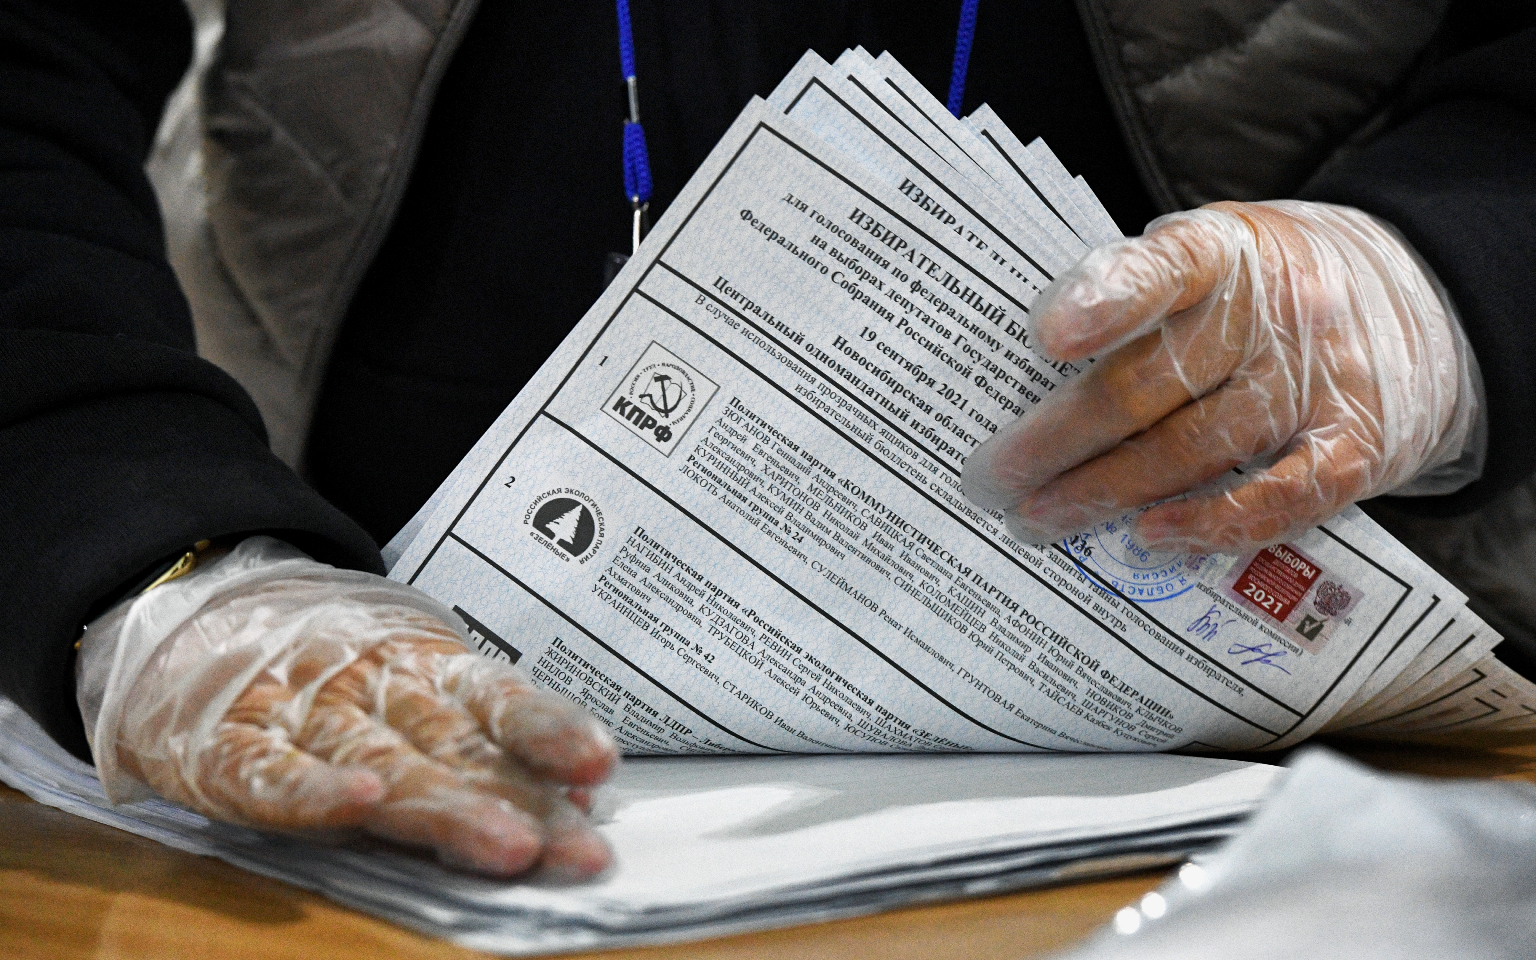 ЦИК подсчитала 100% протоколов на выборах в Госдуму